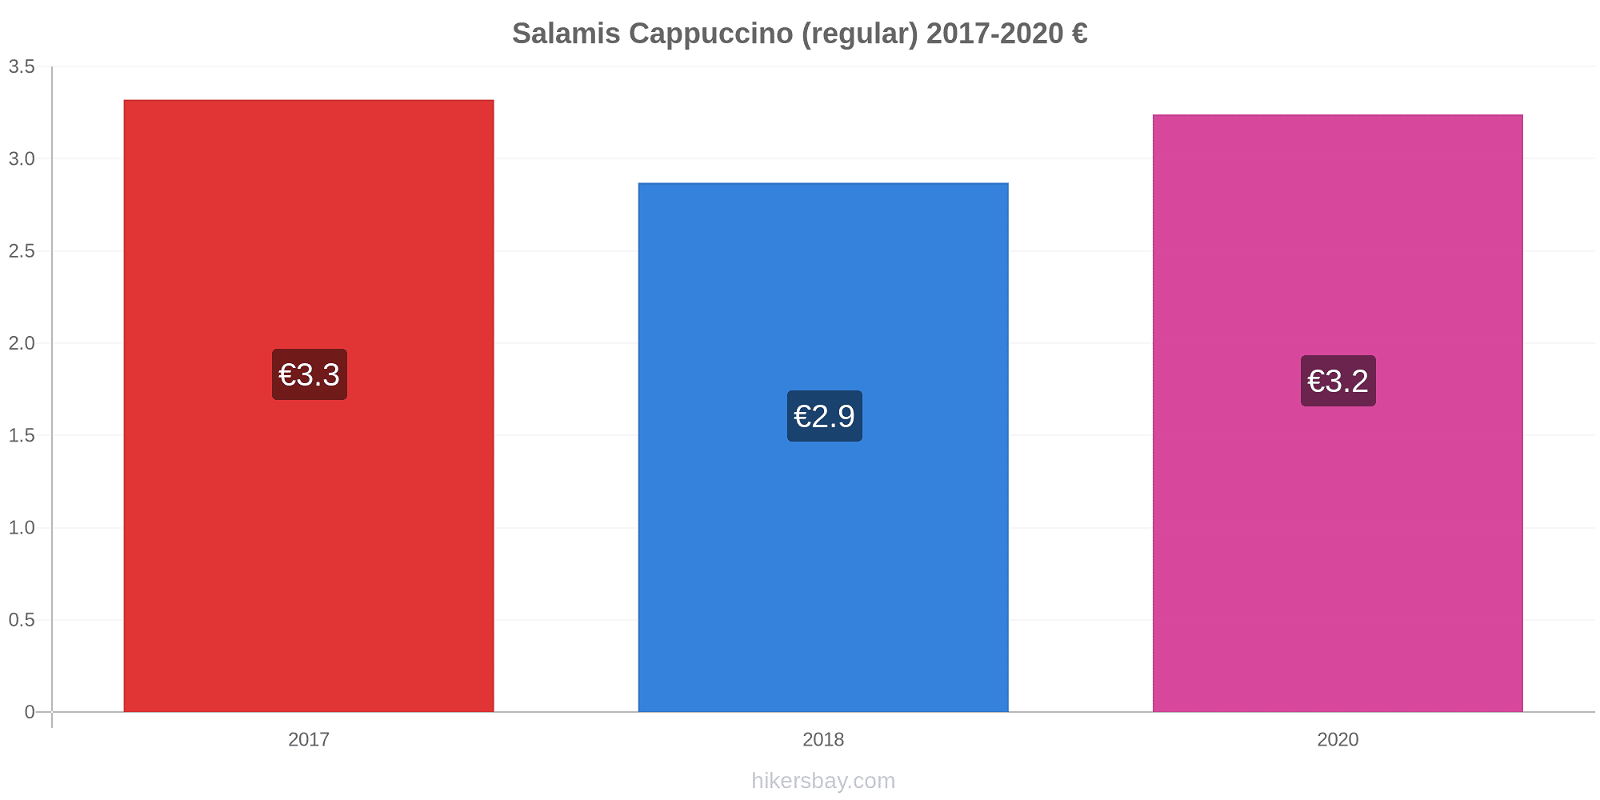 Salamis price changes Cappuccino (regular) hikersbay.com